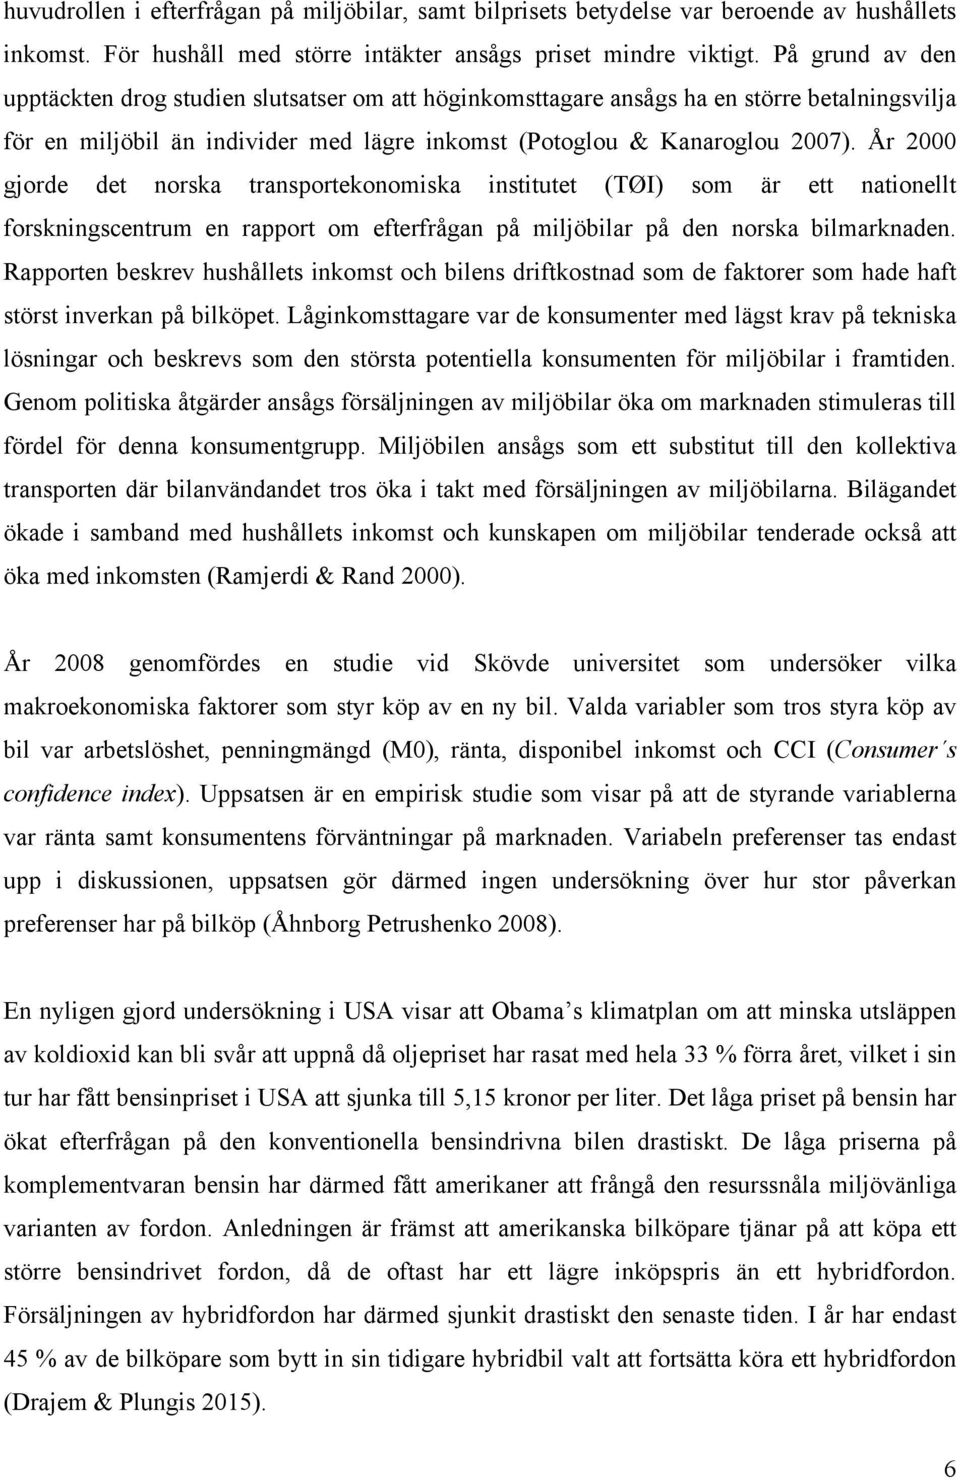 År 2000 gjorde det norska transportekonomiska institutet (TØI) som är ett nationellt forskningscentrum en rapport om efterfrågan på miljöbilar på den norska bilmarknaden.